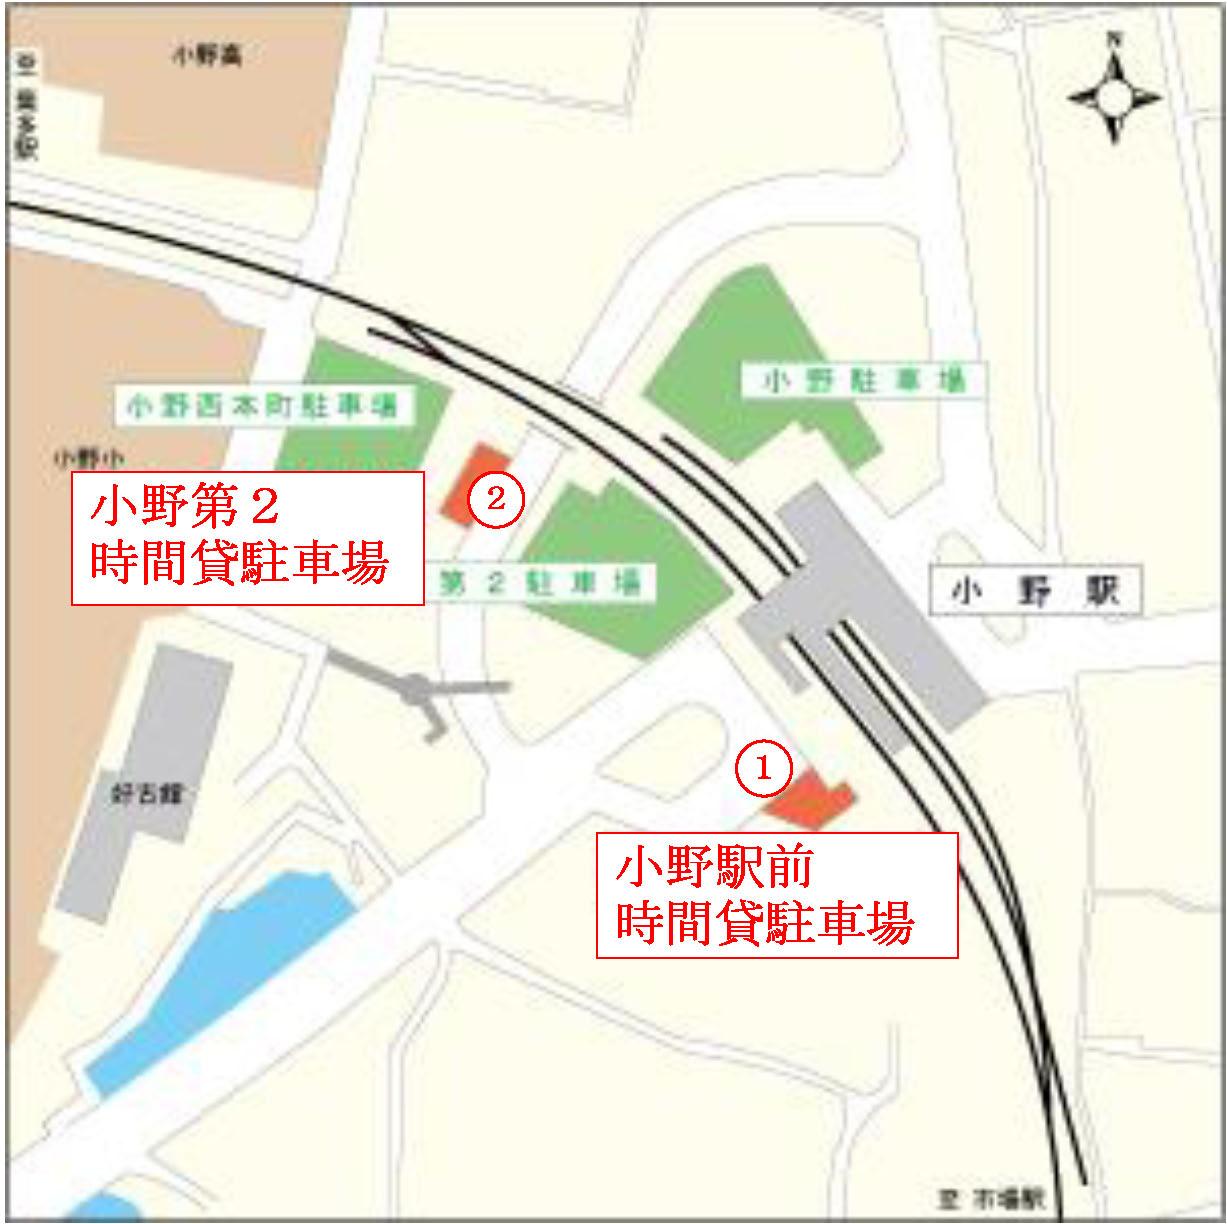 小野駅の位置と2か所のパークアンドライド駐車場の位置関係を示した地図